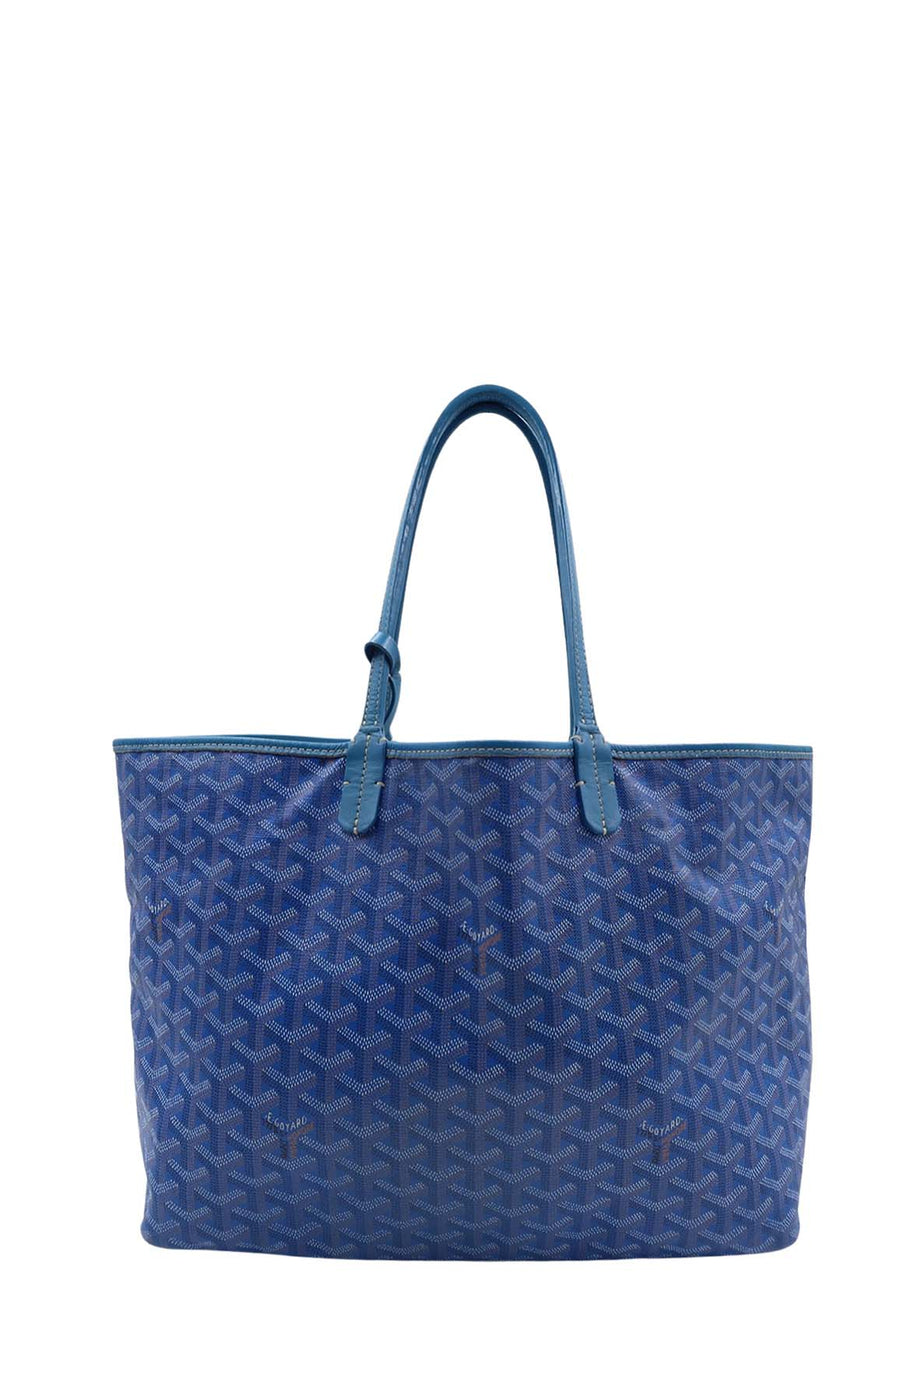 Goyard, Bags, Goyard Bag Blue